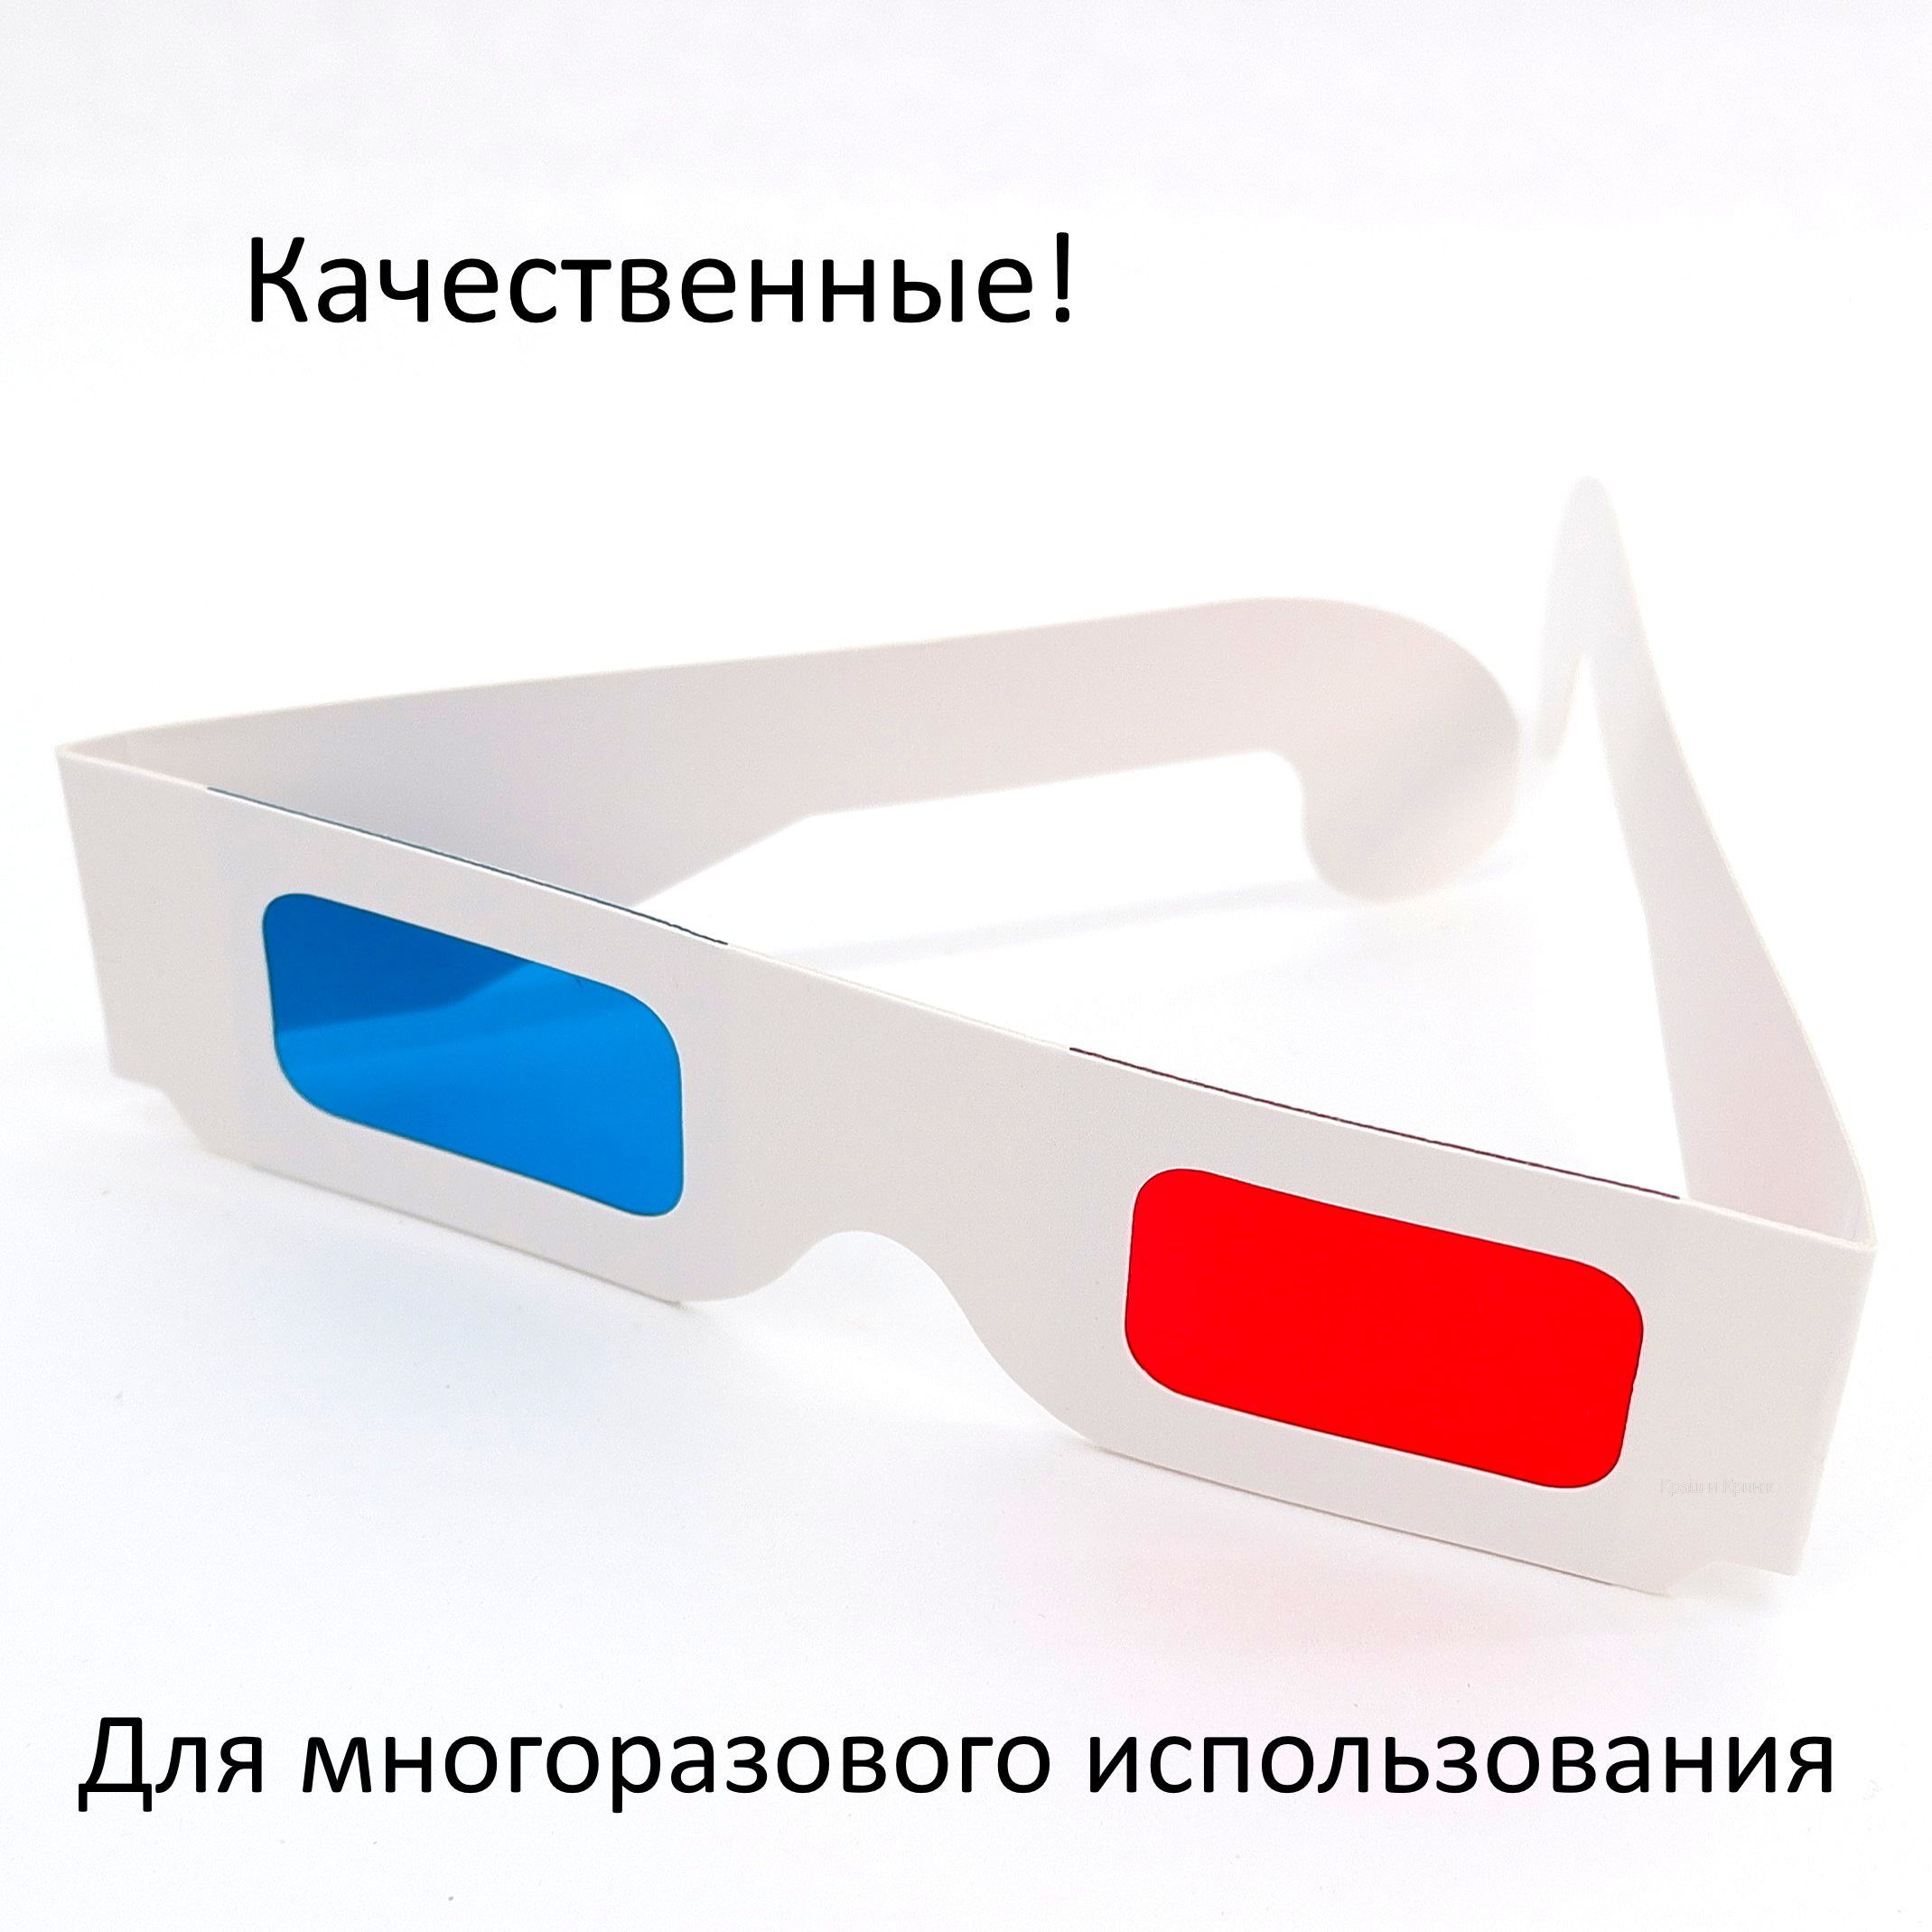 3D видео эротика. Анаглиф стерео (красно-синие очки).